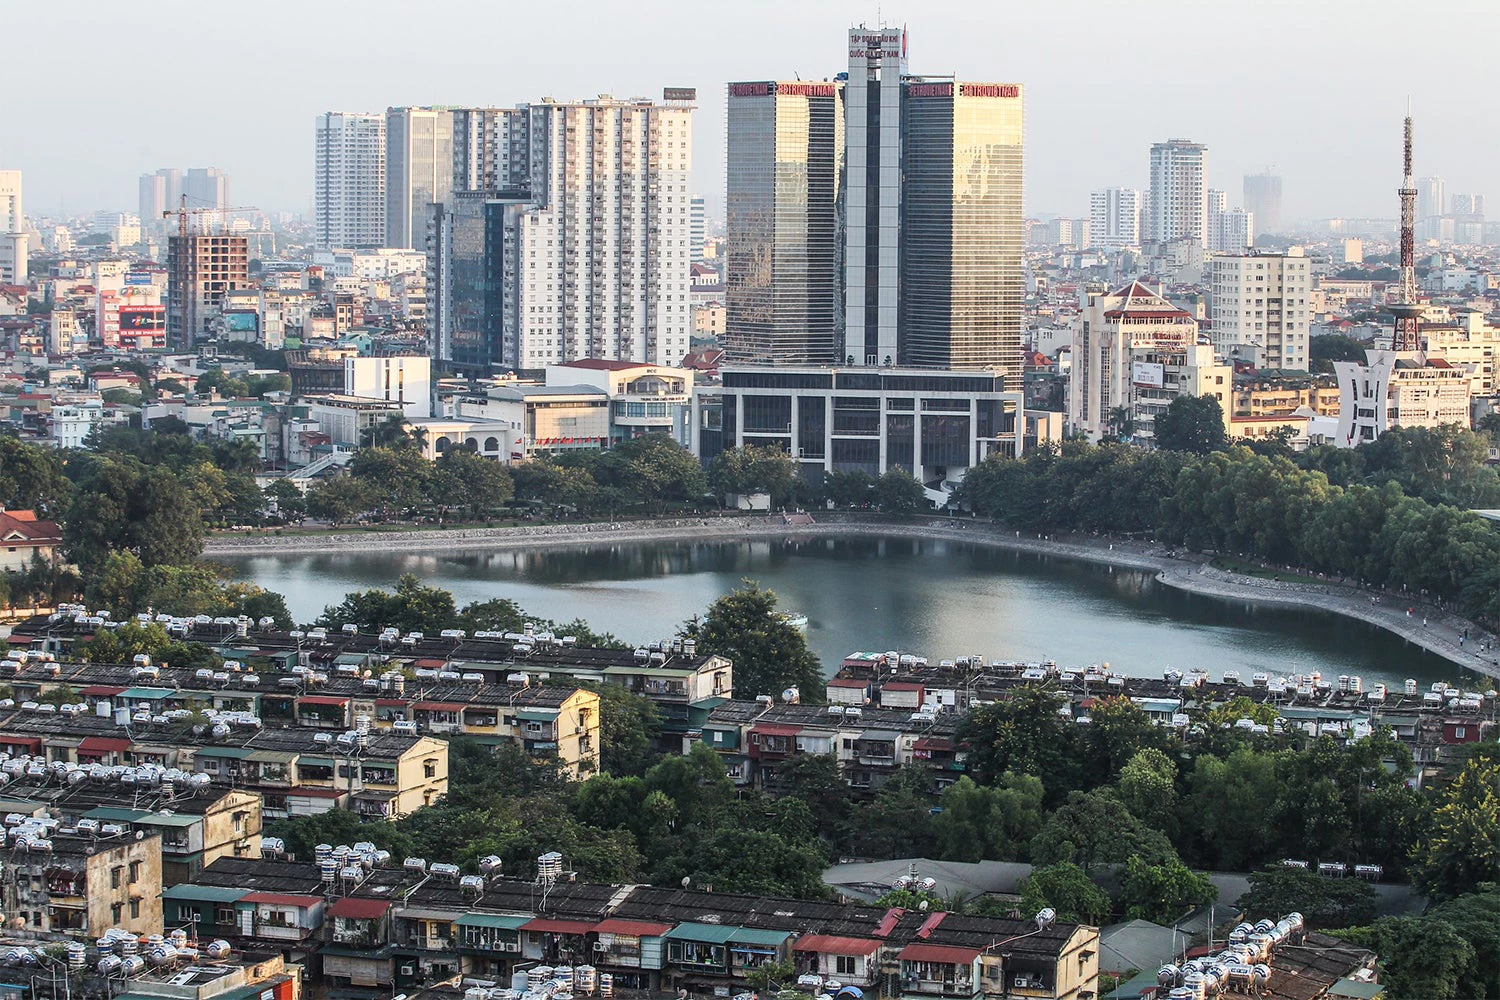 City view, Vietnam ©Nguyen Khanh / World Bank